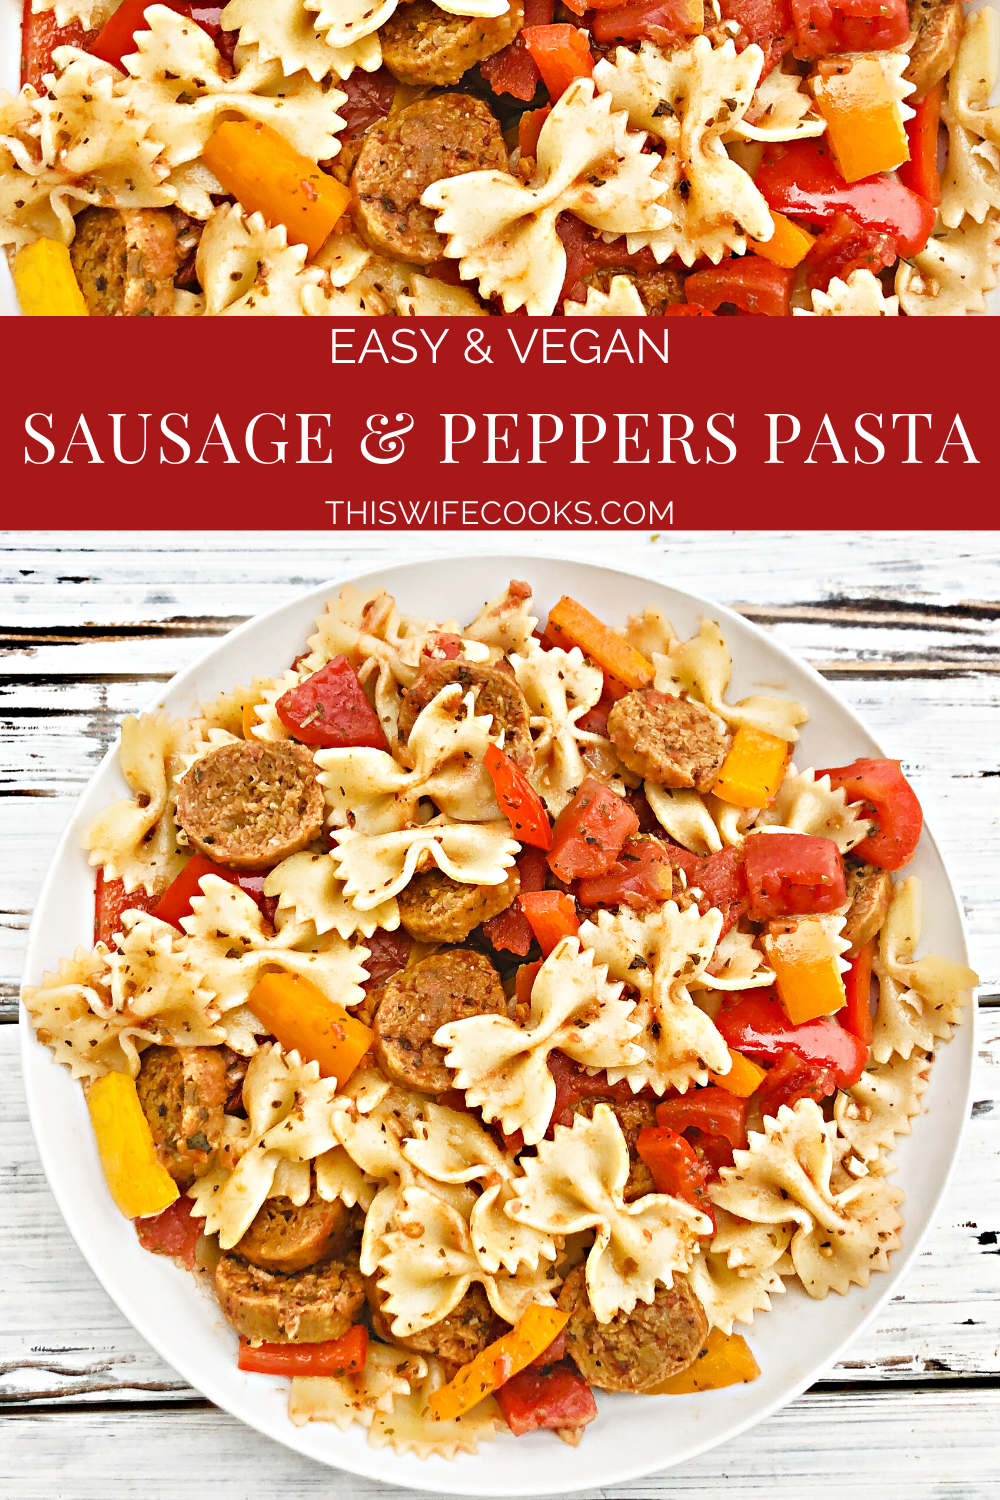 Vegan Sausage and Peppers Pasta - Rychlá a snadná večeře na rostlinné pánvi plná pikantní italské klobásy, barevnými paprikami a těstovinami zamíchanými do lehké a zemité rajčatové omáčky. Připraveno k podávání za 30 minut nebo méně!#sausageandpeppers #easyvegandinners #30minutemeals #vegansausagerecepes #thiswifecooksrecepty #quickandeasydinners #veganquarantinecooking #sausageandpepperspasta via @thiswifecooks